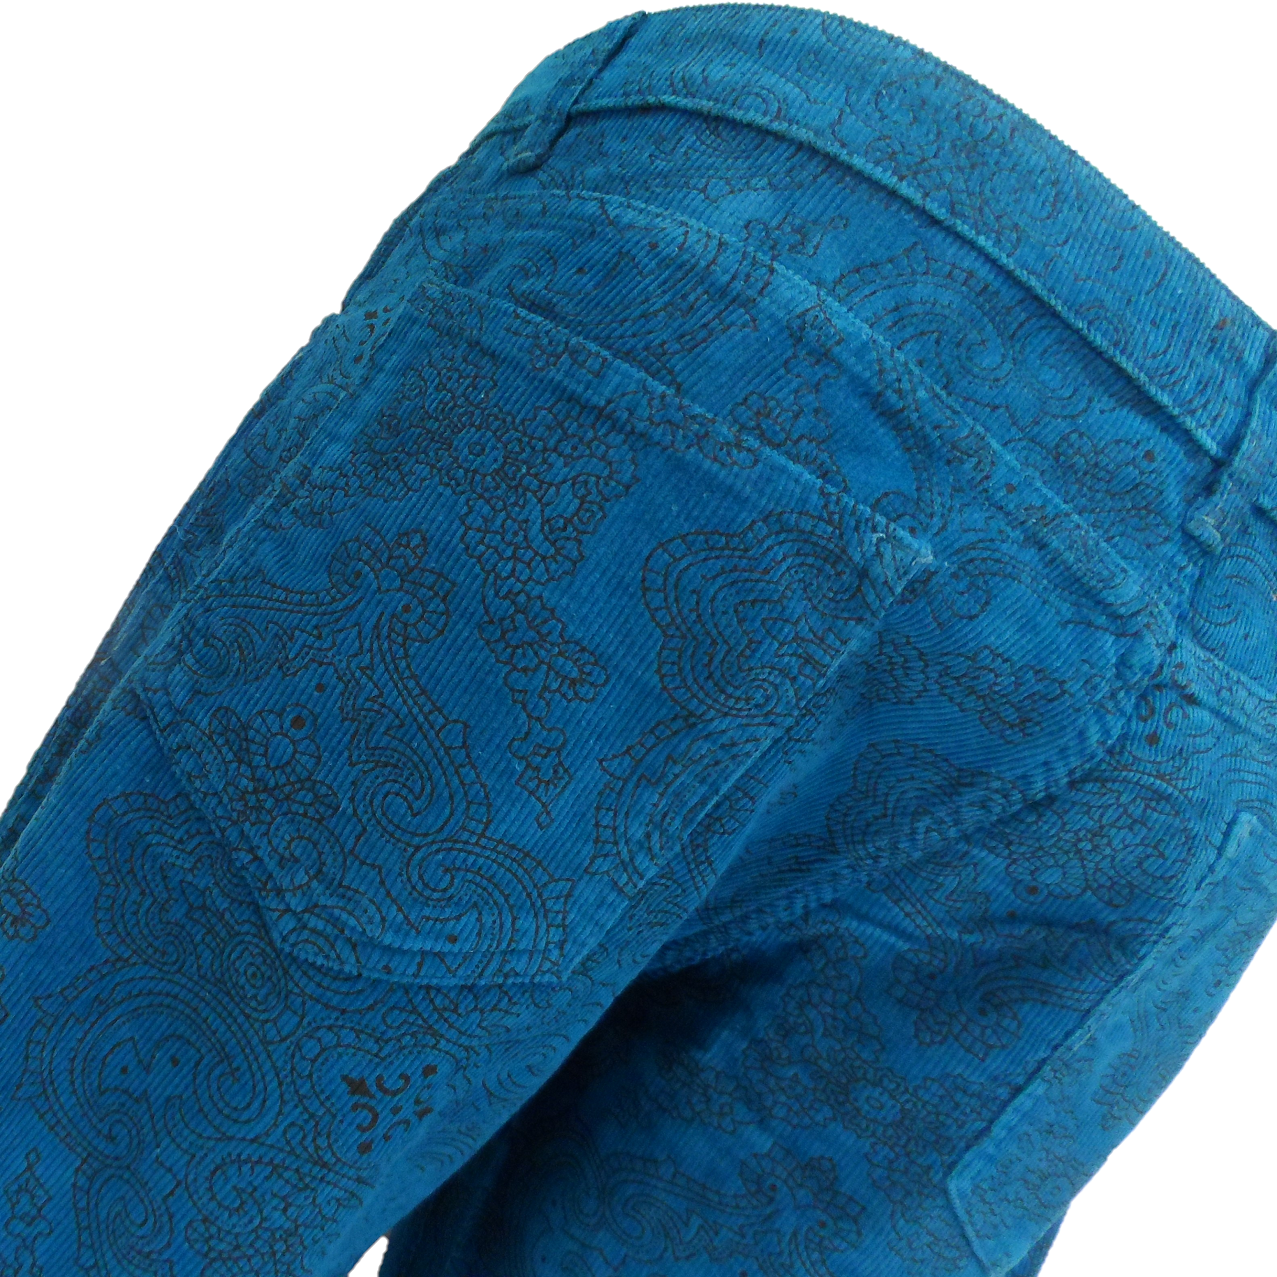 Run & Fly hombre azul tinta vintage Jimi Hendrix Paisley pantalones de campana retro